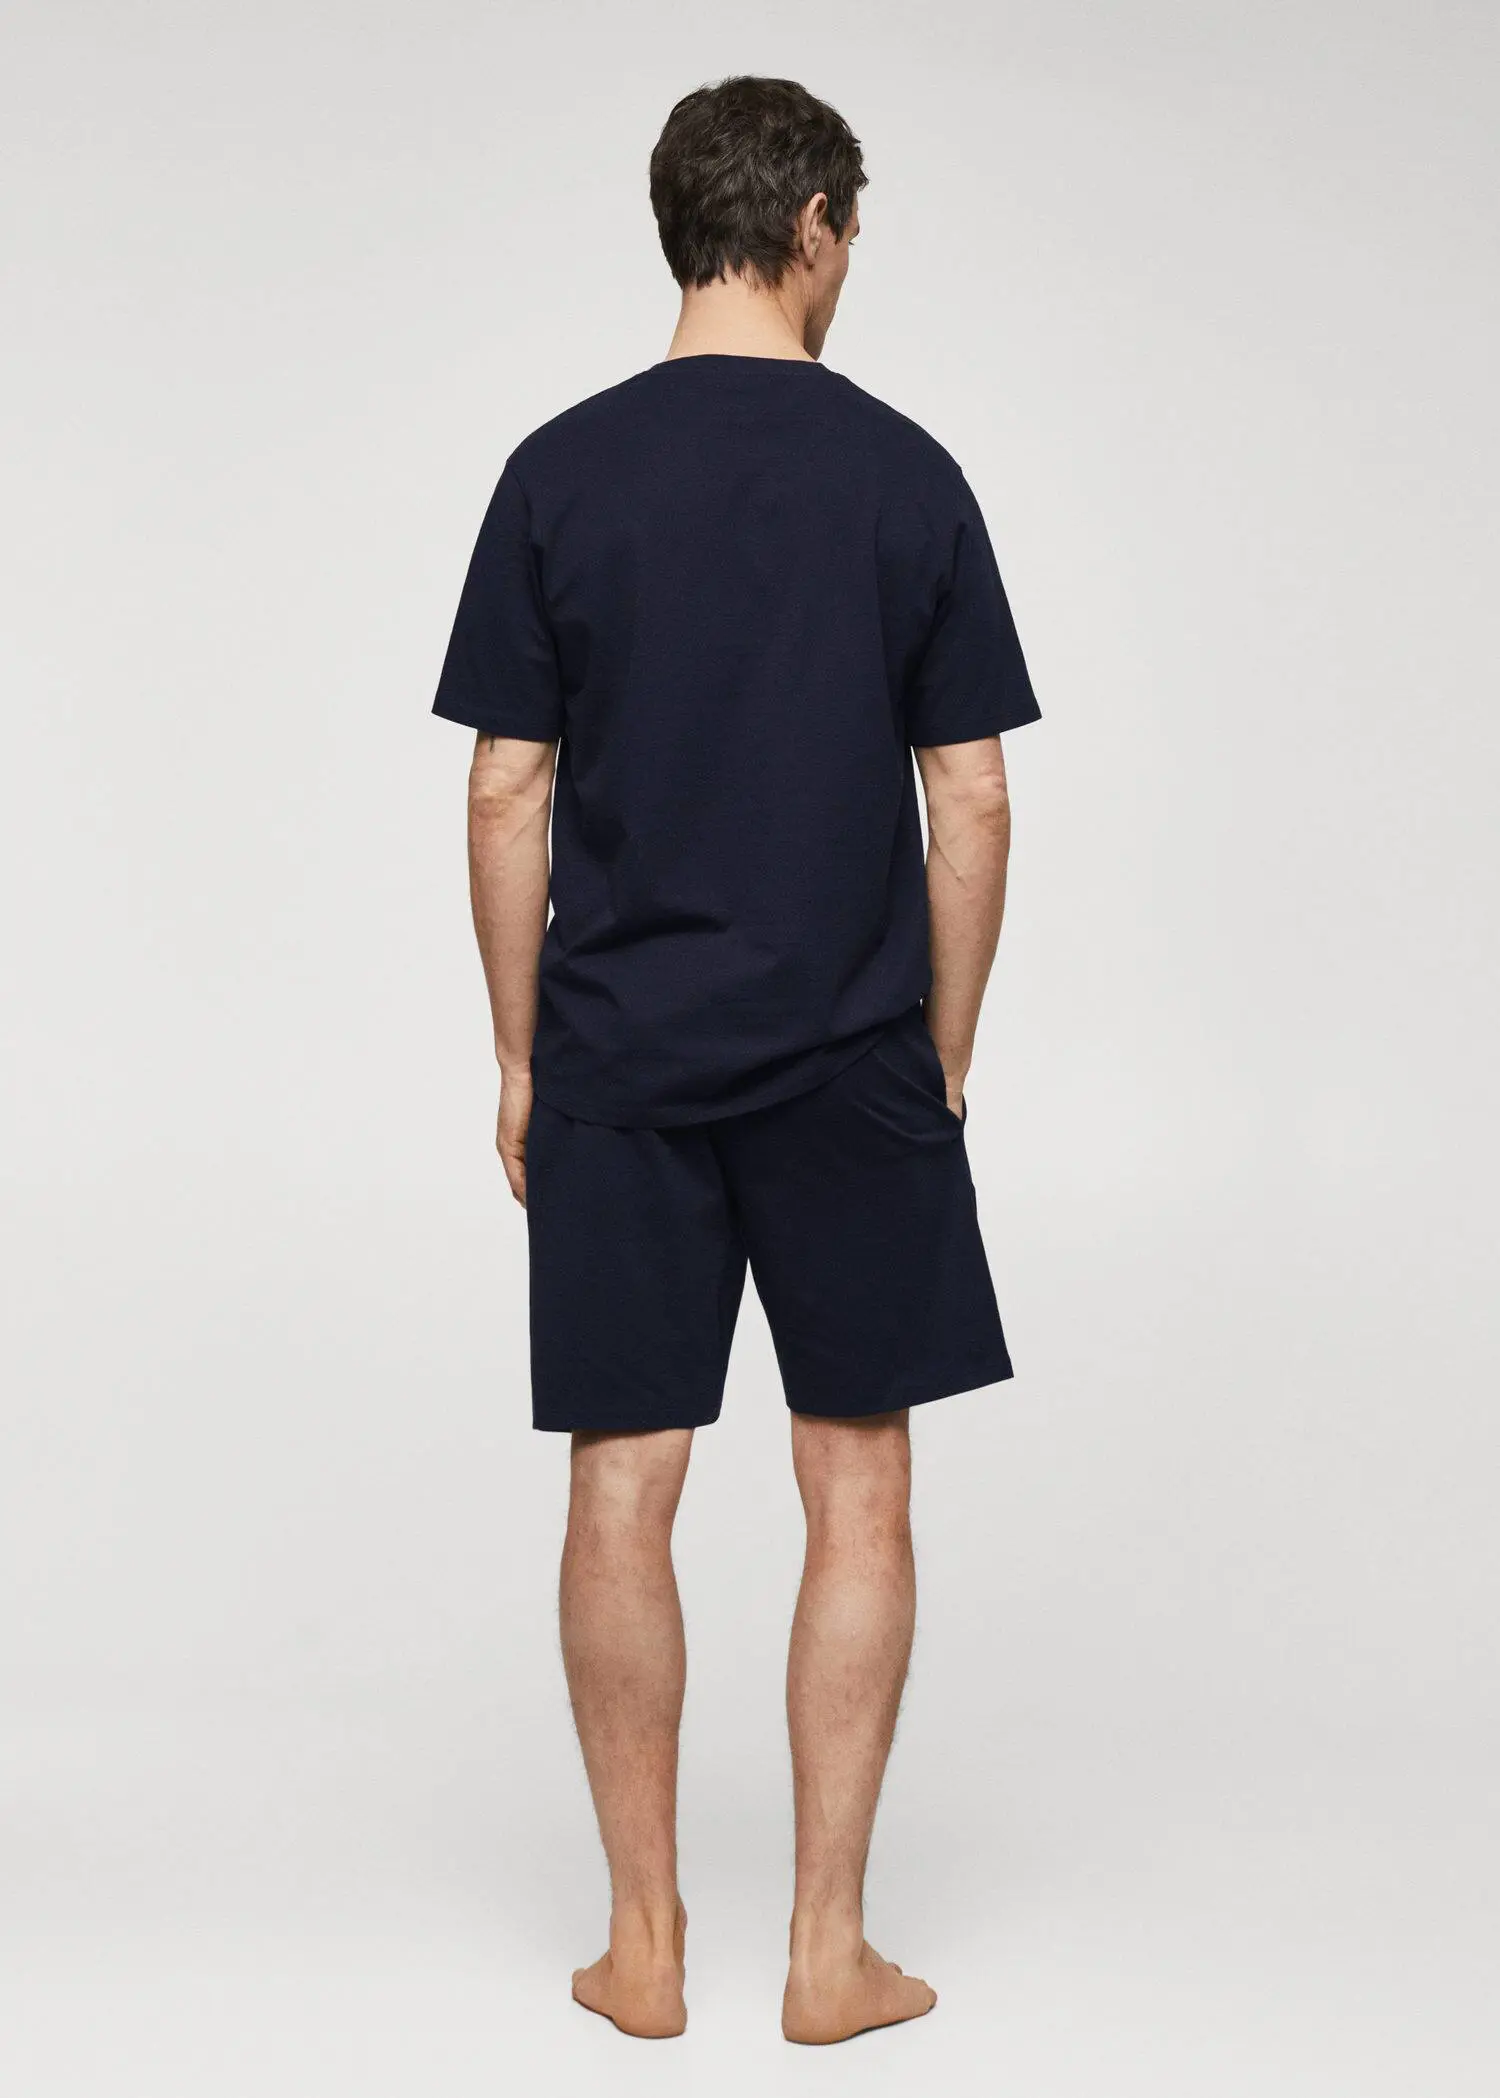 Mango Cotton pajama shorts pack. a man wearing a black shirt and shorts. 